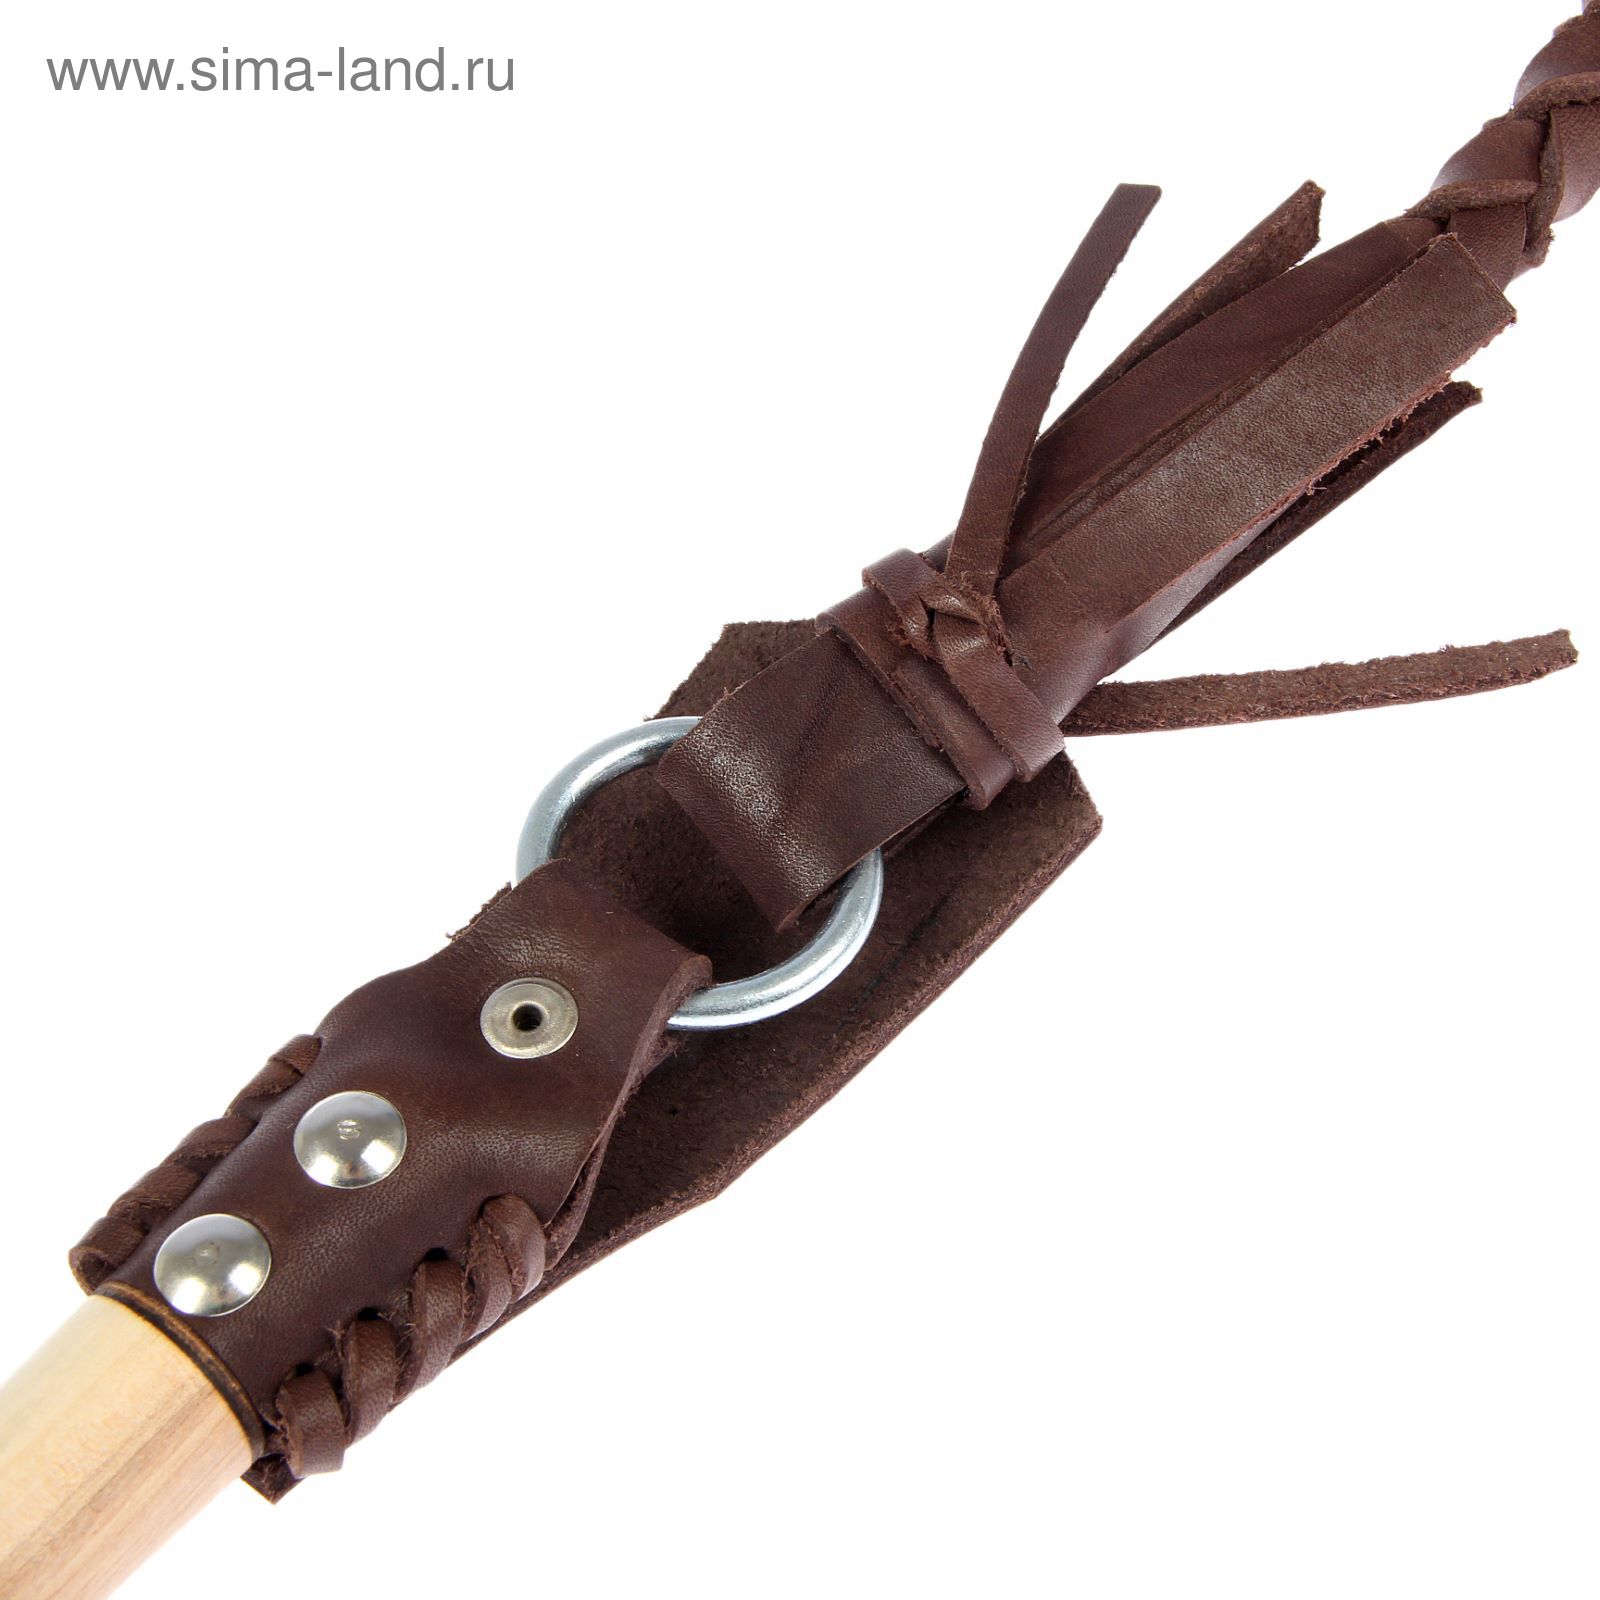 Нагайка Донская, ручка оплетена кожей, коричневая